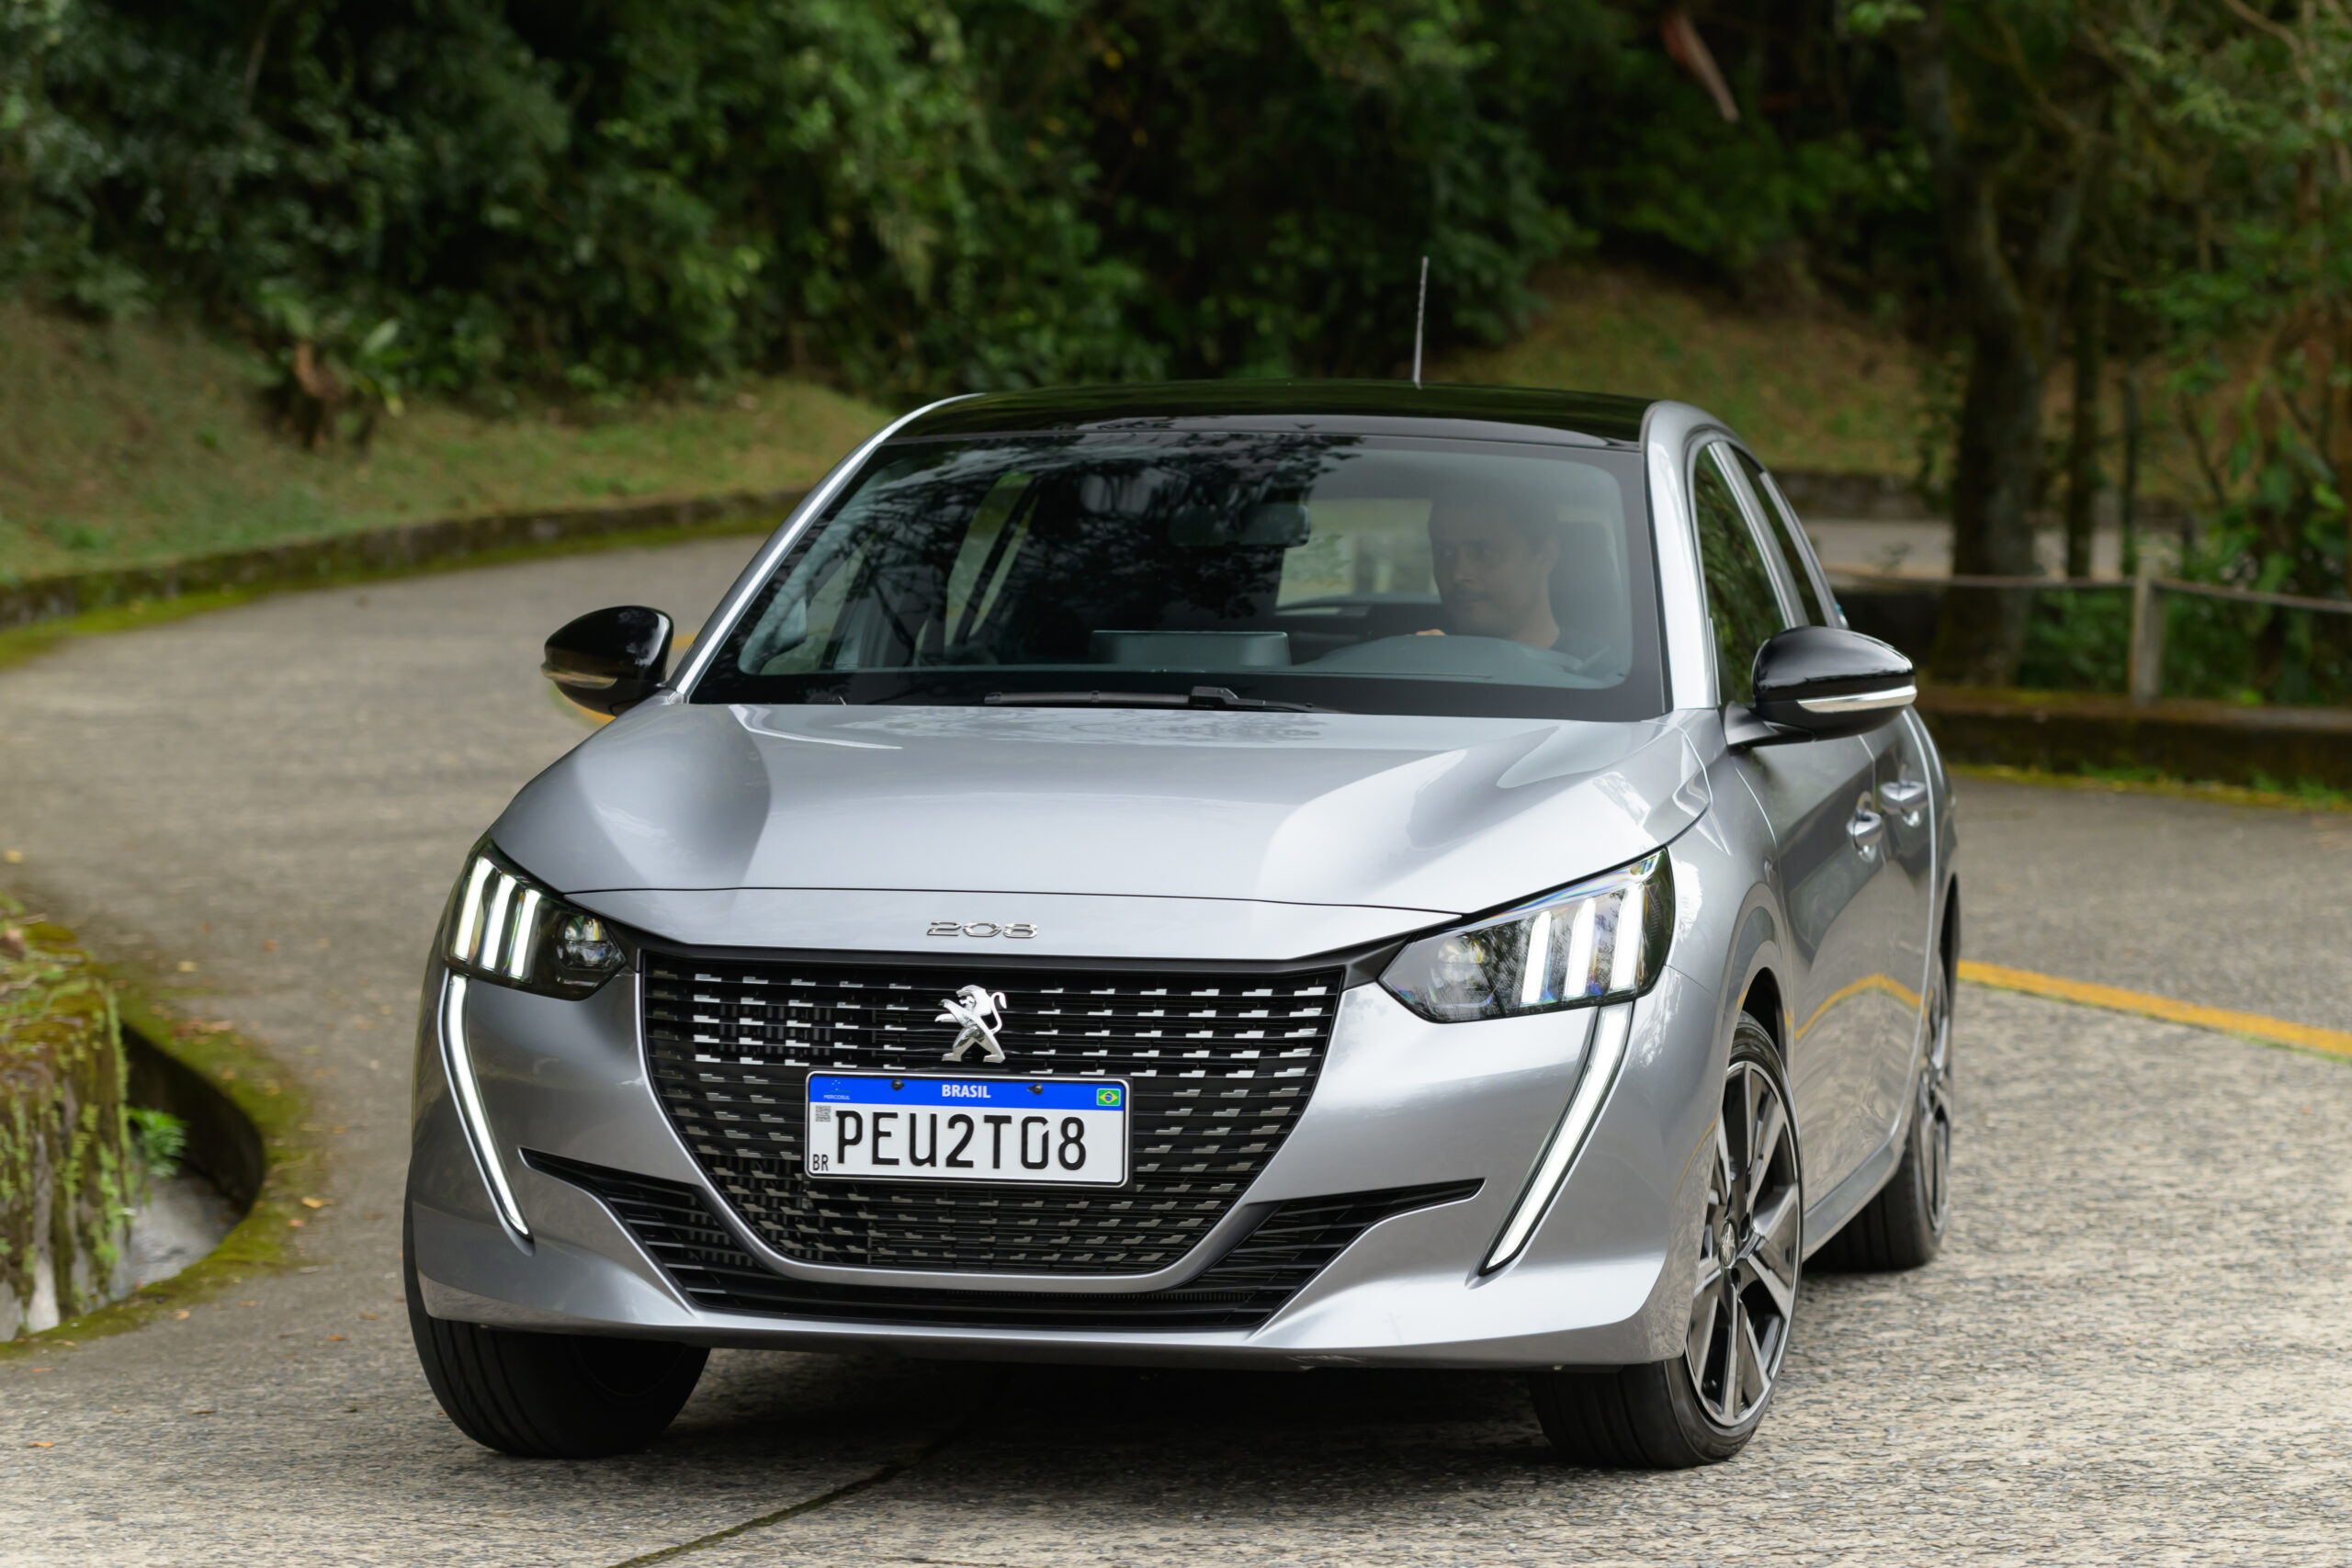 Nova moto da Peugeot tem desenho futurista e detalhe de 208